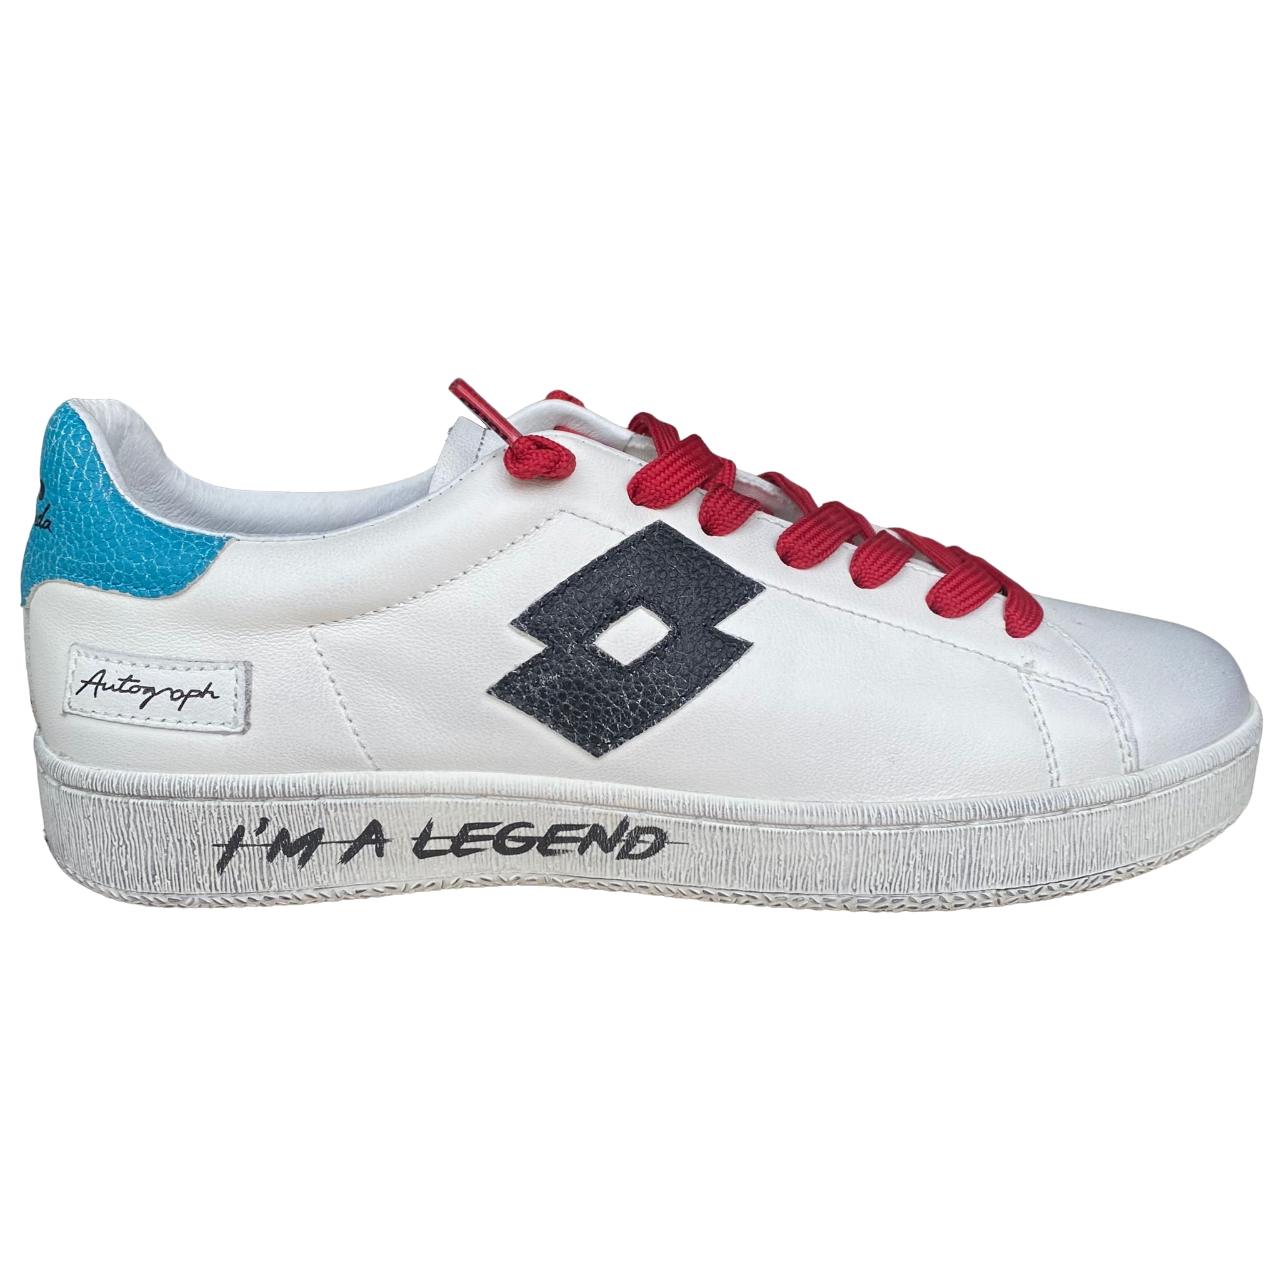 Lotto scarpa sneakers da uomo in pelle Autograph Legend 219568 AJW bianco-nero-blu